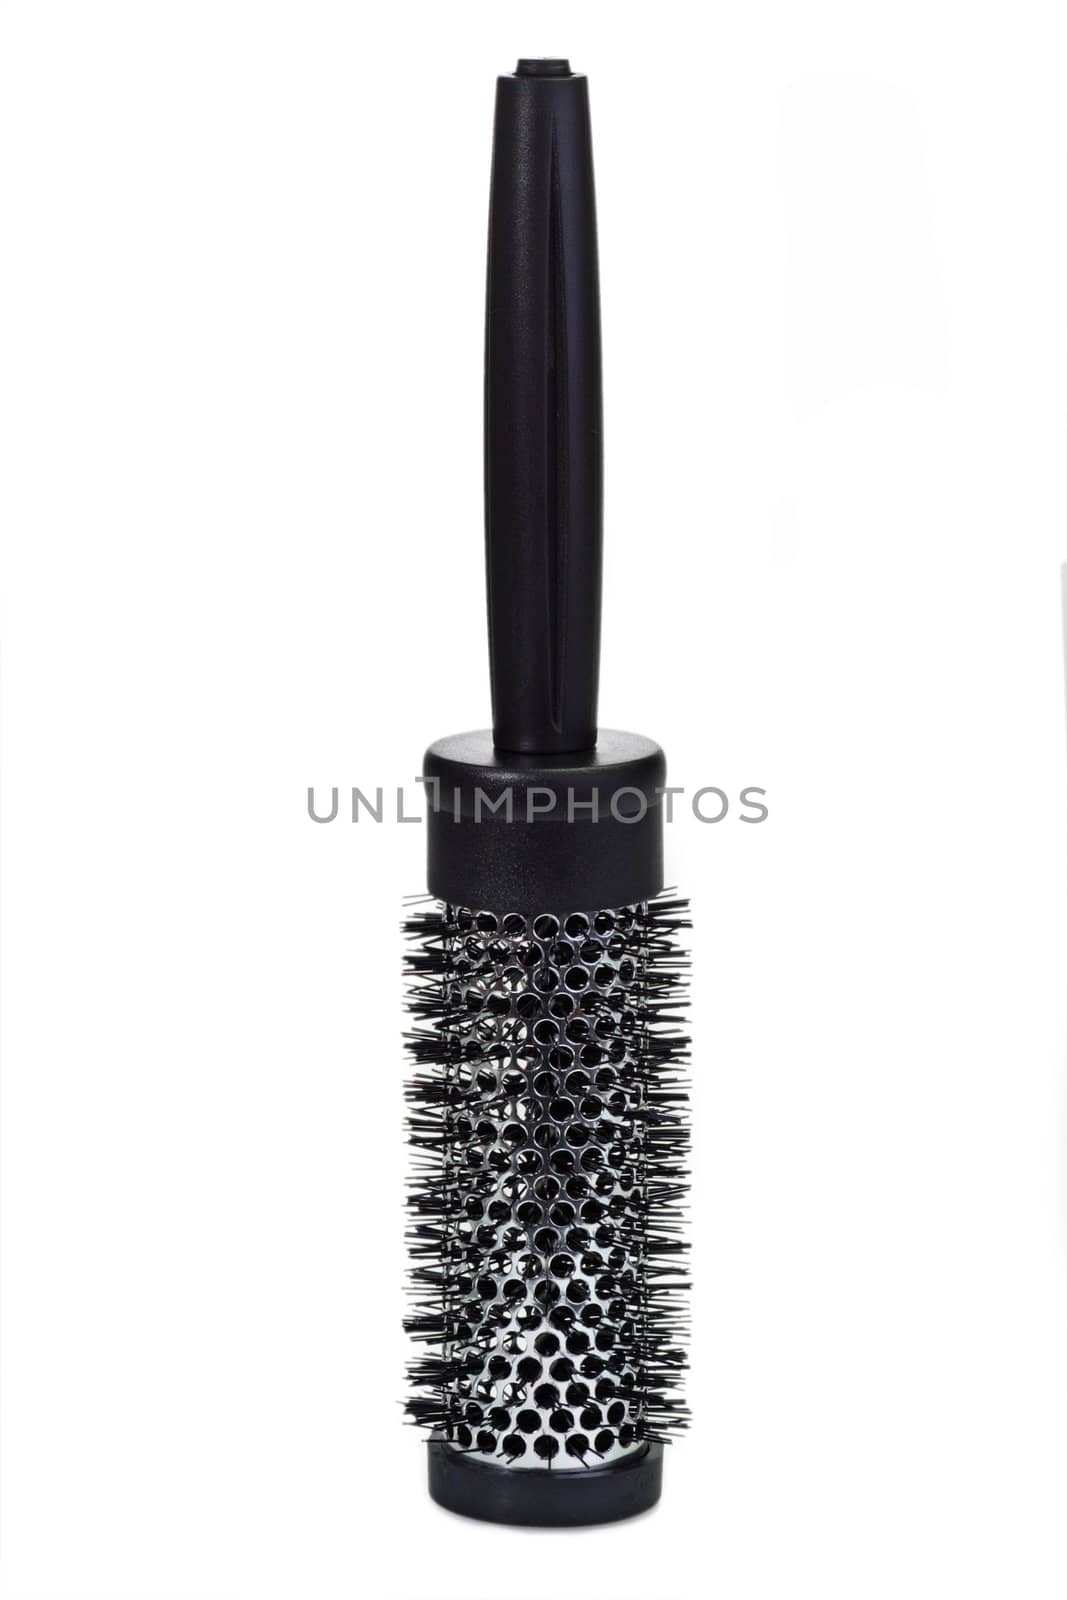 Hairbrush by Teamarbeit